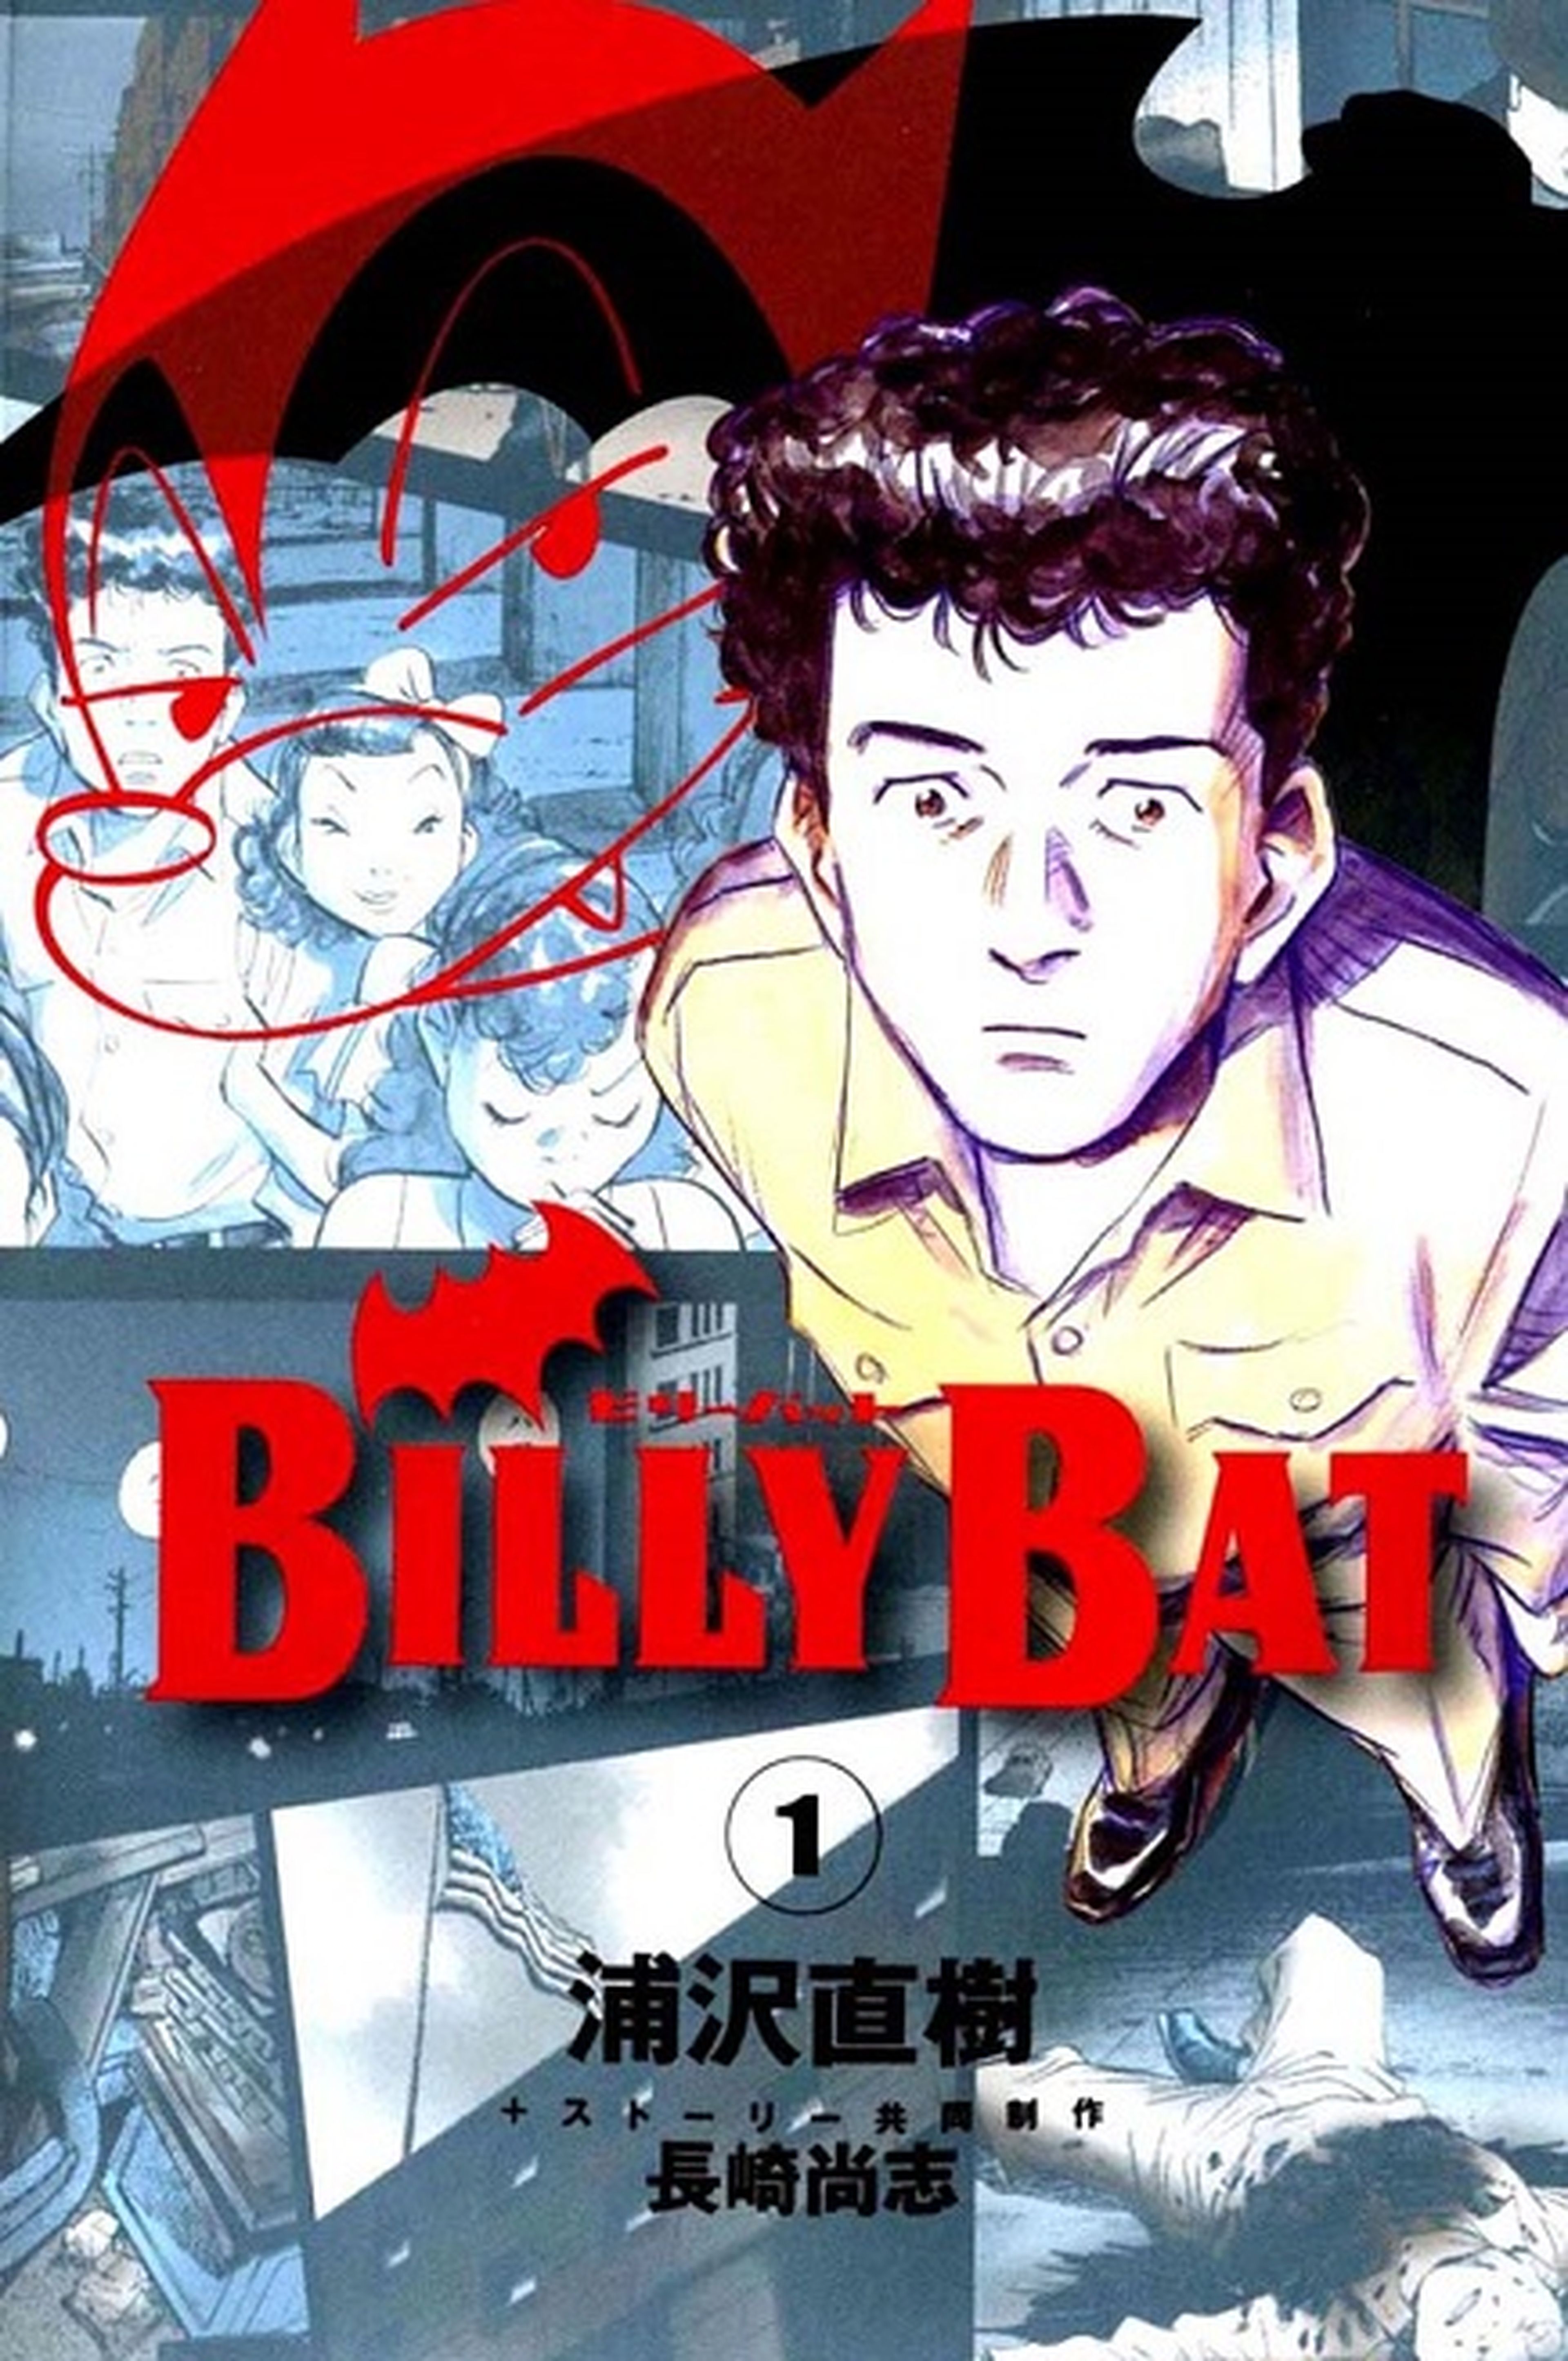 Billy Bat entra en su arco final